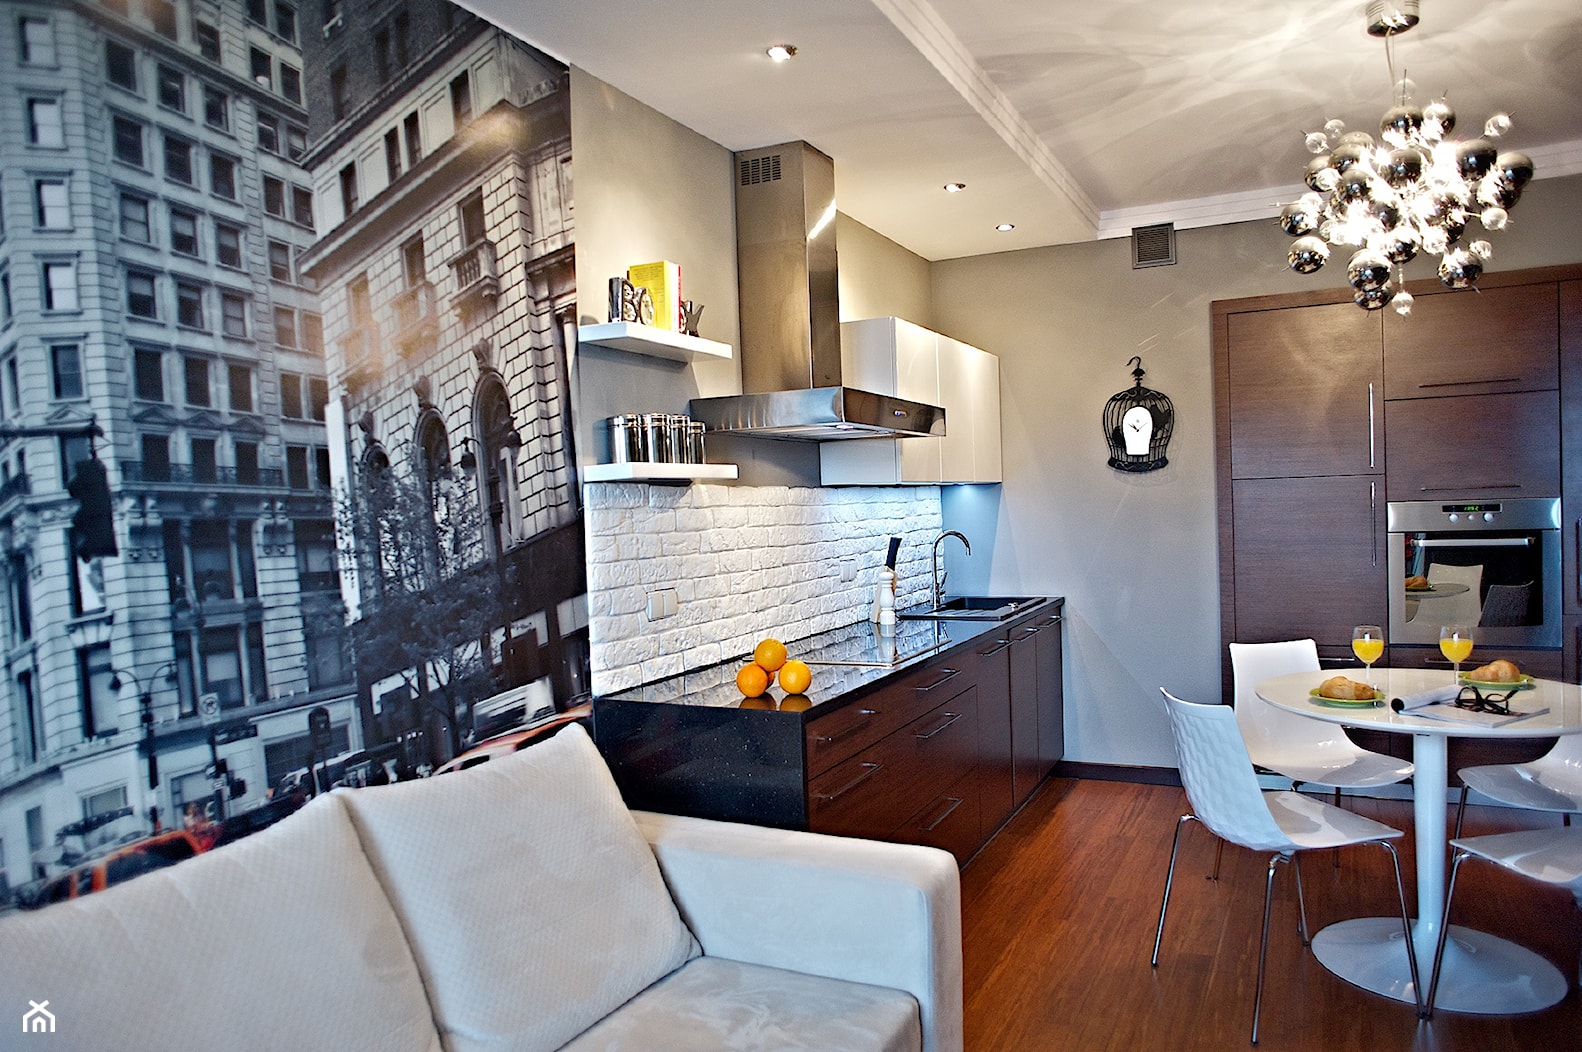 mieszkanie rodzeństwa 76m2 - Kuchnia, styl nowoczesny - zdjęcie od rooMore - Homebook